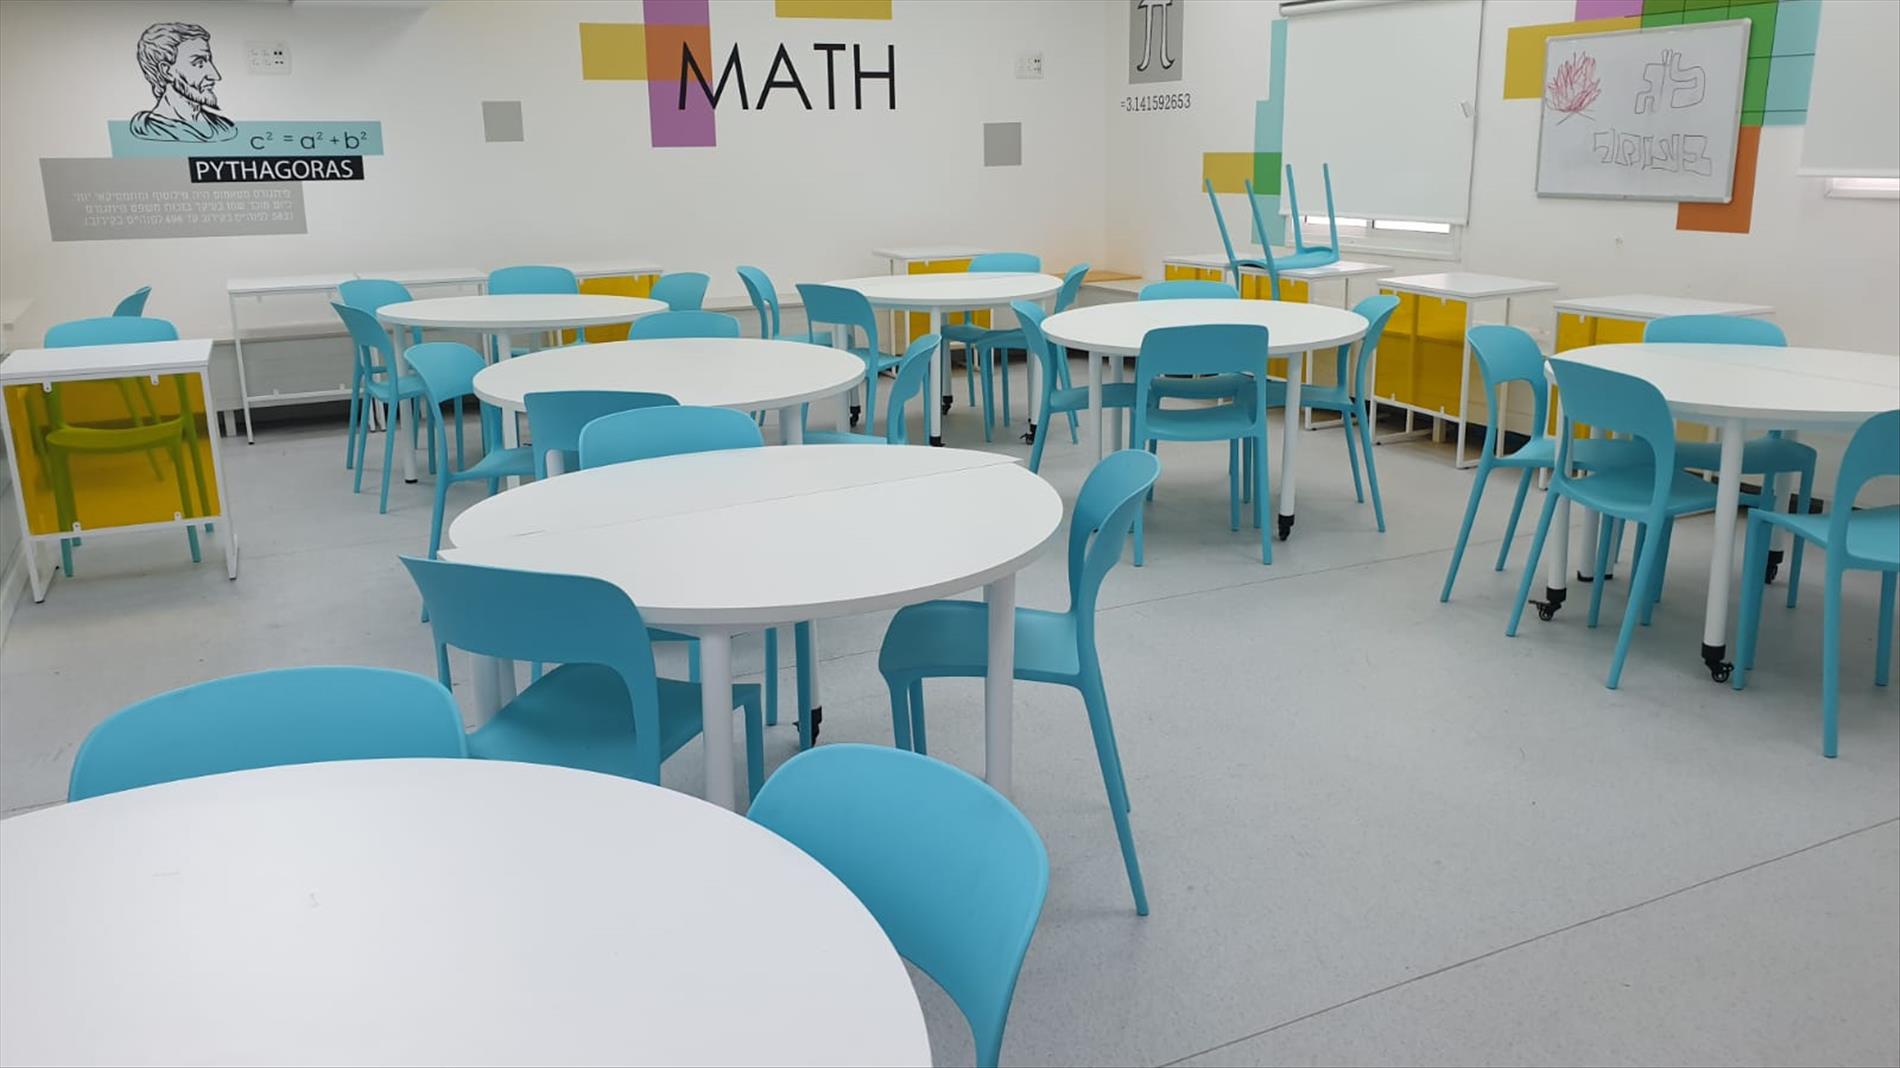 "כפרי לצד נגיעות מודרניות": כשהתלמידים עיצבו חדר מתמטיקה